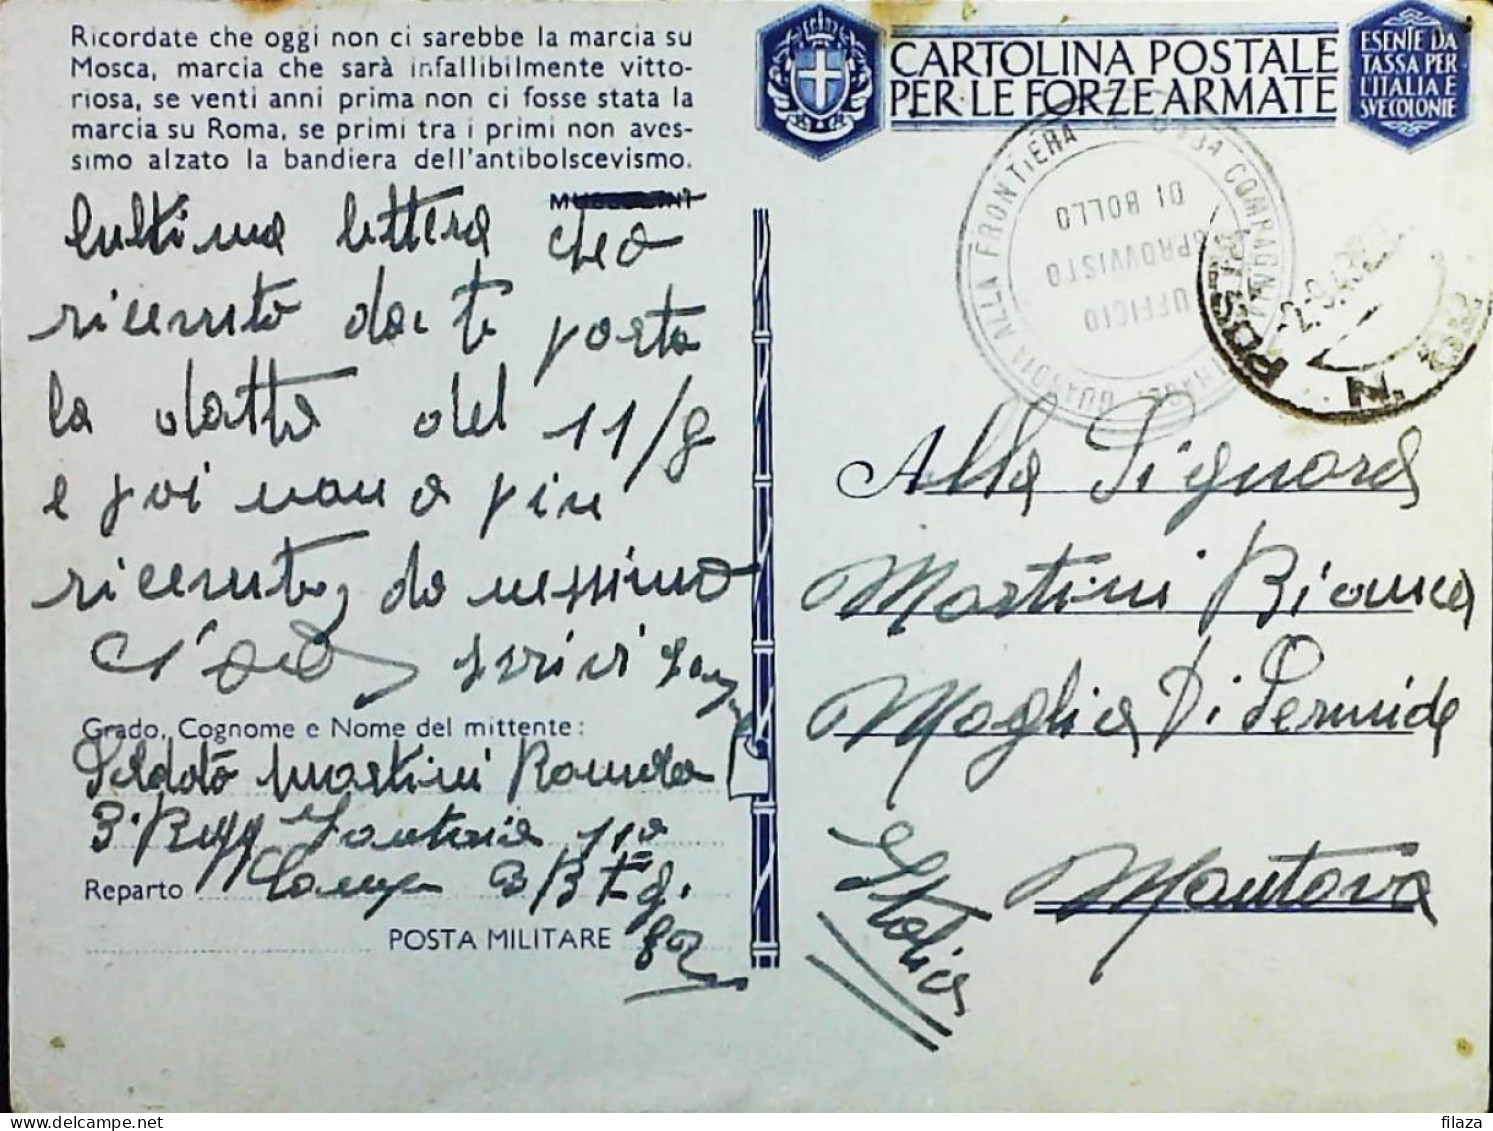 POSTA MILITARE ITALIA IN GRECIA  - WWII WW2 - S6864 - Militaire Post (PM)